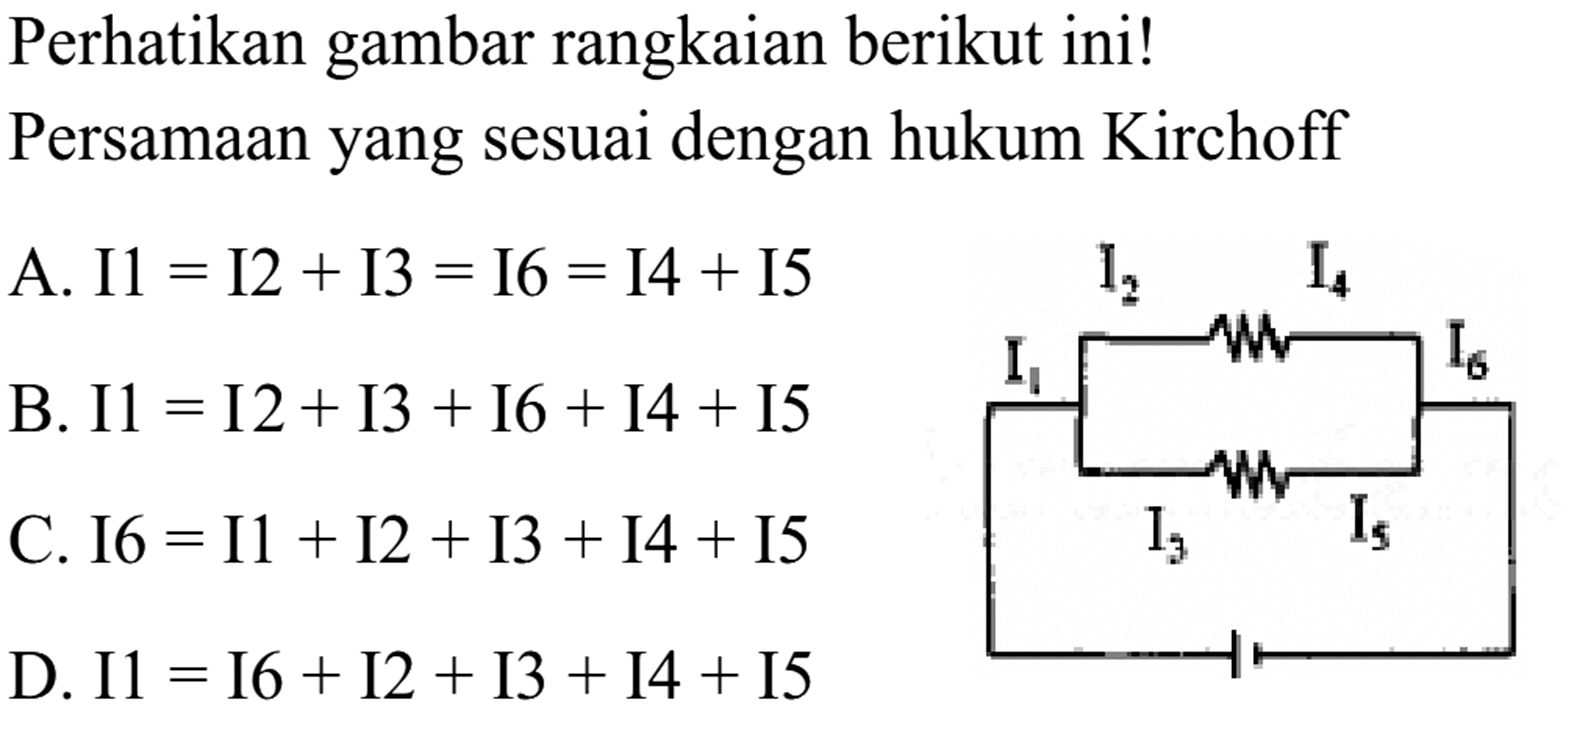 Perhatikan gambar rangkaian berikut ini!
PersamAn yang sesuai dengan hukum Kirchoff
A.  I 1=I 2+I 3=I 6=I 4+I 5  B.  I 1=I 2+I 3+I 6+I 4+I 5  C.  I 6=I 1+I 2+I 3+I 4+I 5  D.  I 1=I 6+I 2+I 3+I 4+I 5 